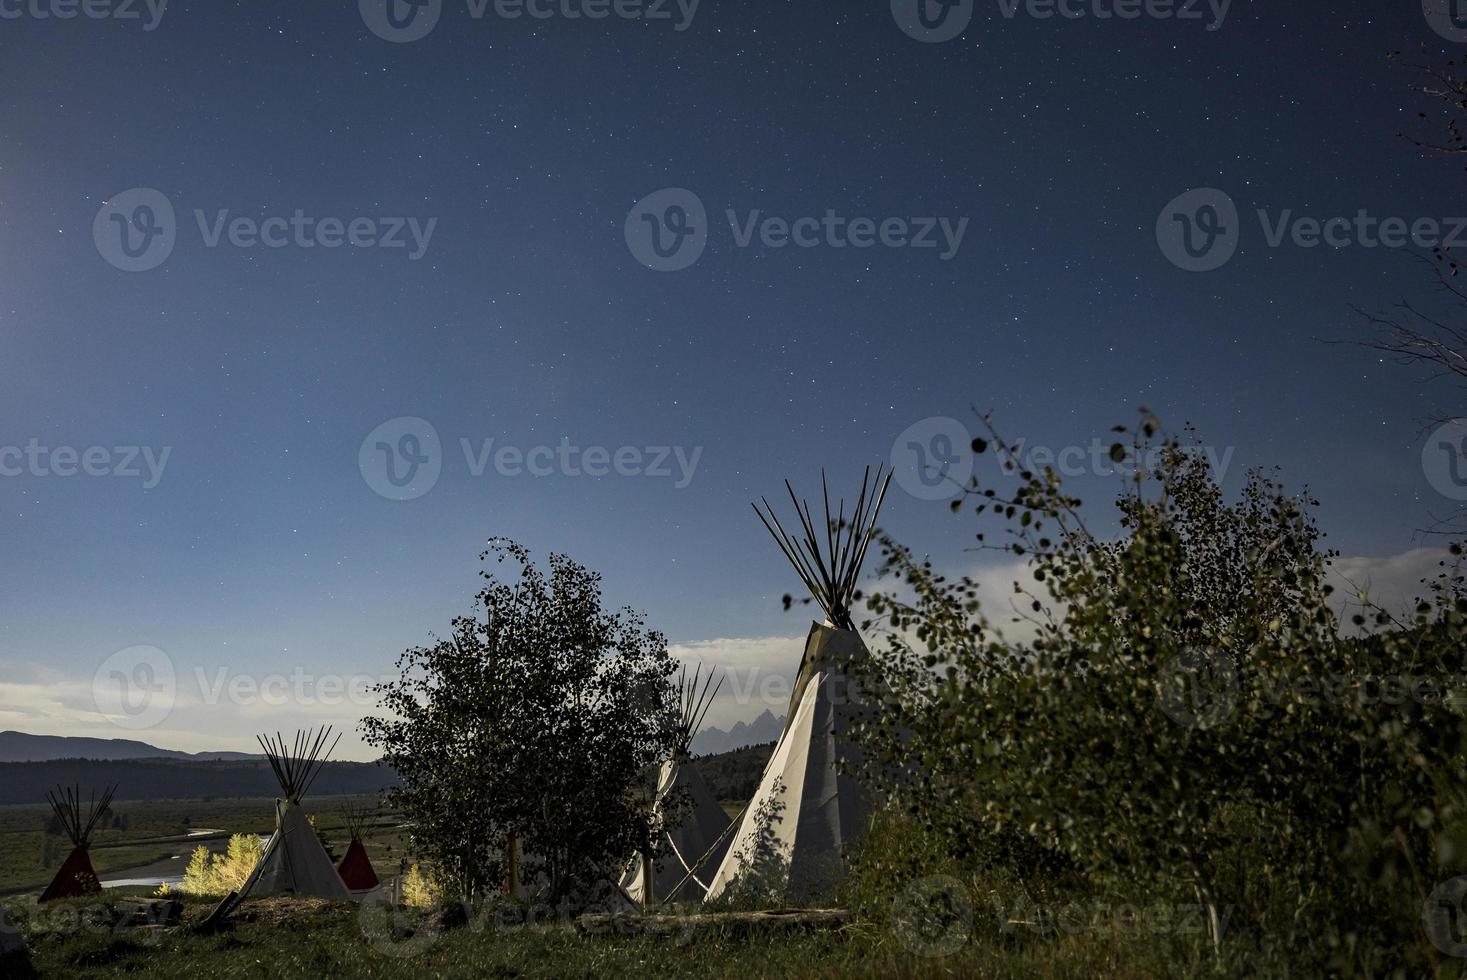 pequenos yurts em pé no campo sob o céu noturno cheio de estrelas. passar a noite sob as estrelas. foto